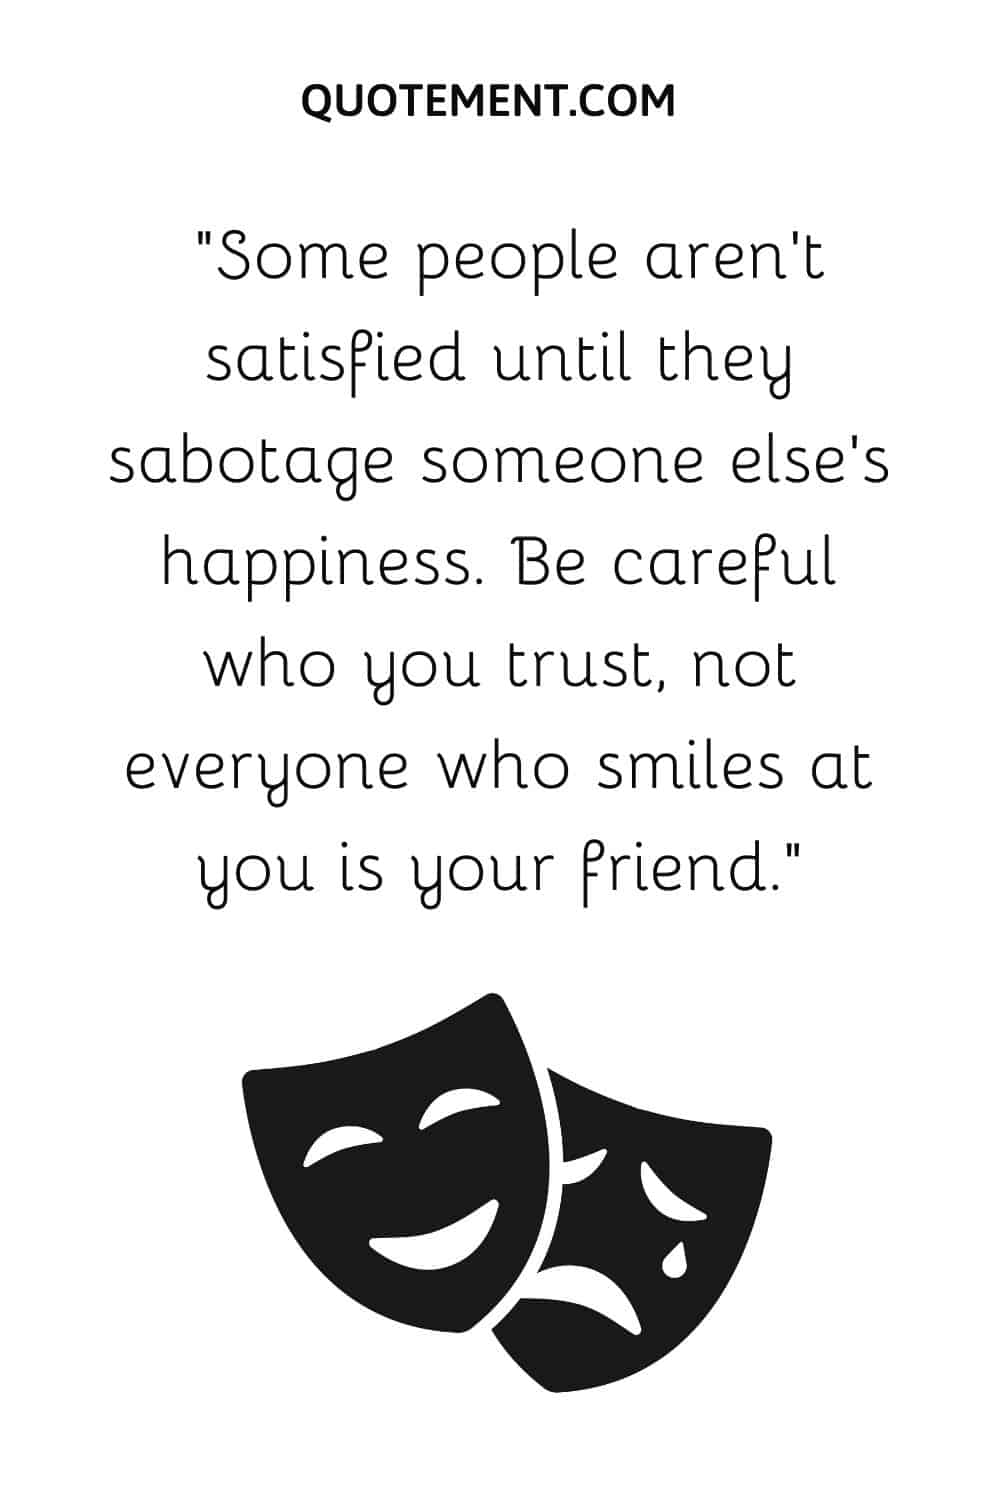 Algunas personas no están satisfechas hasta que sabotean la felicidad de otra persona